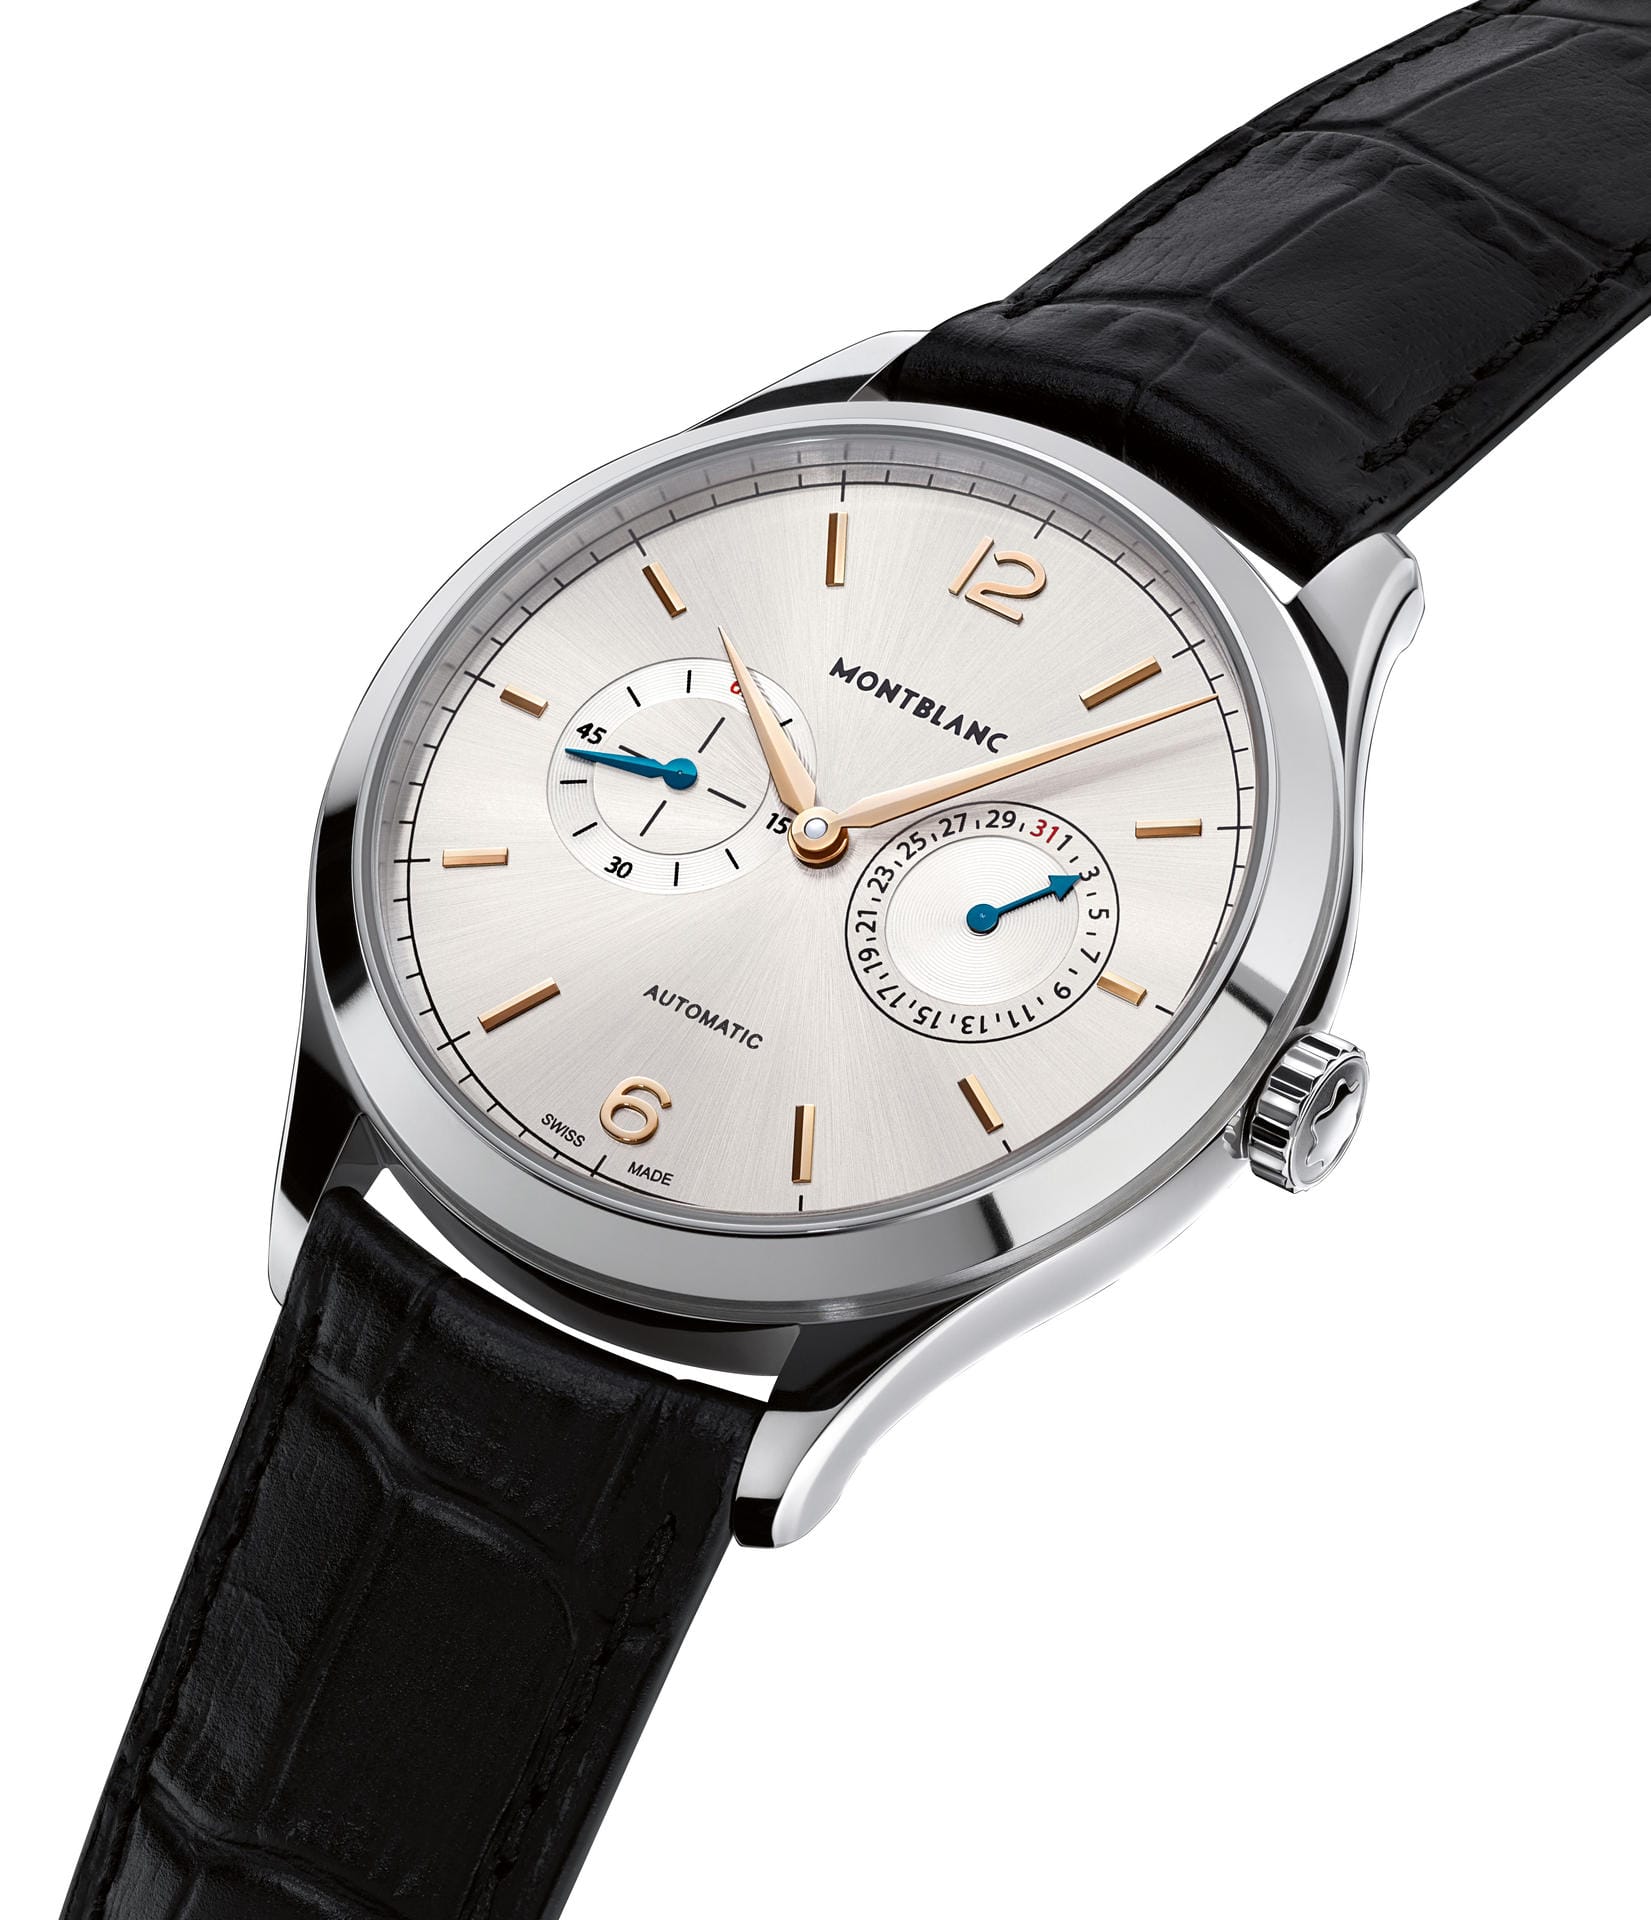 Ebenfalls neu ist die Heritage Chronométrie Collection Twincounter Date. 2790 Euro soll die Uhr kosten.